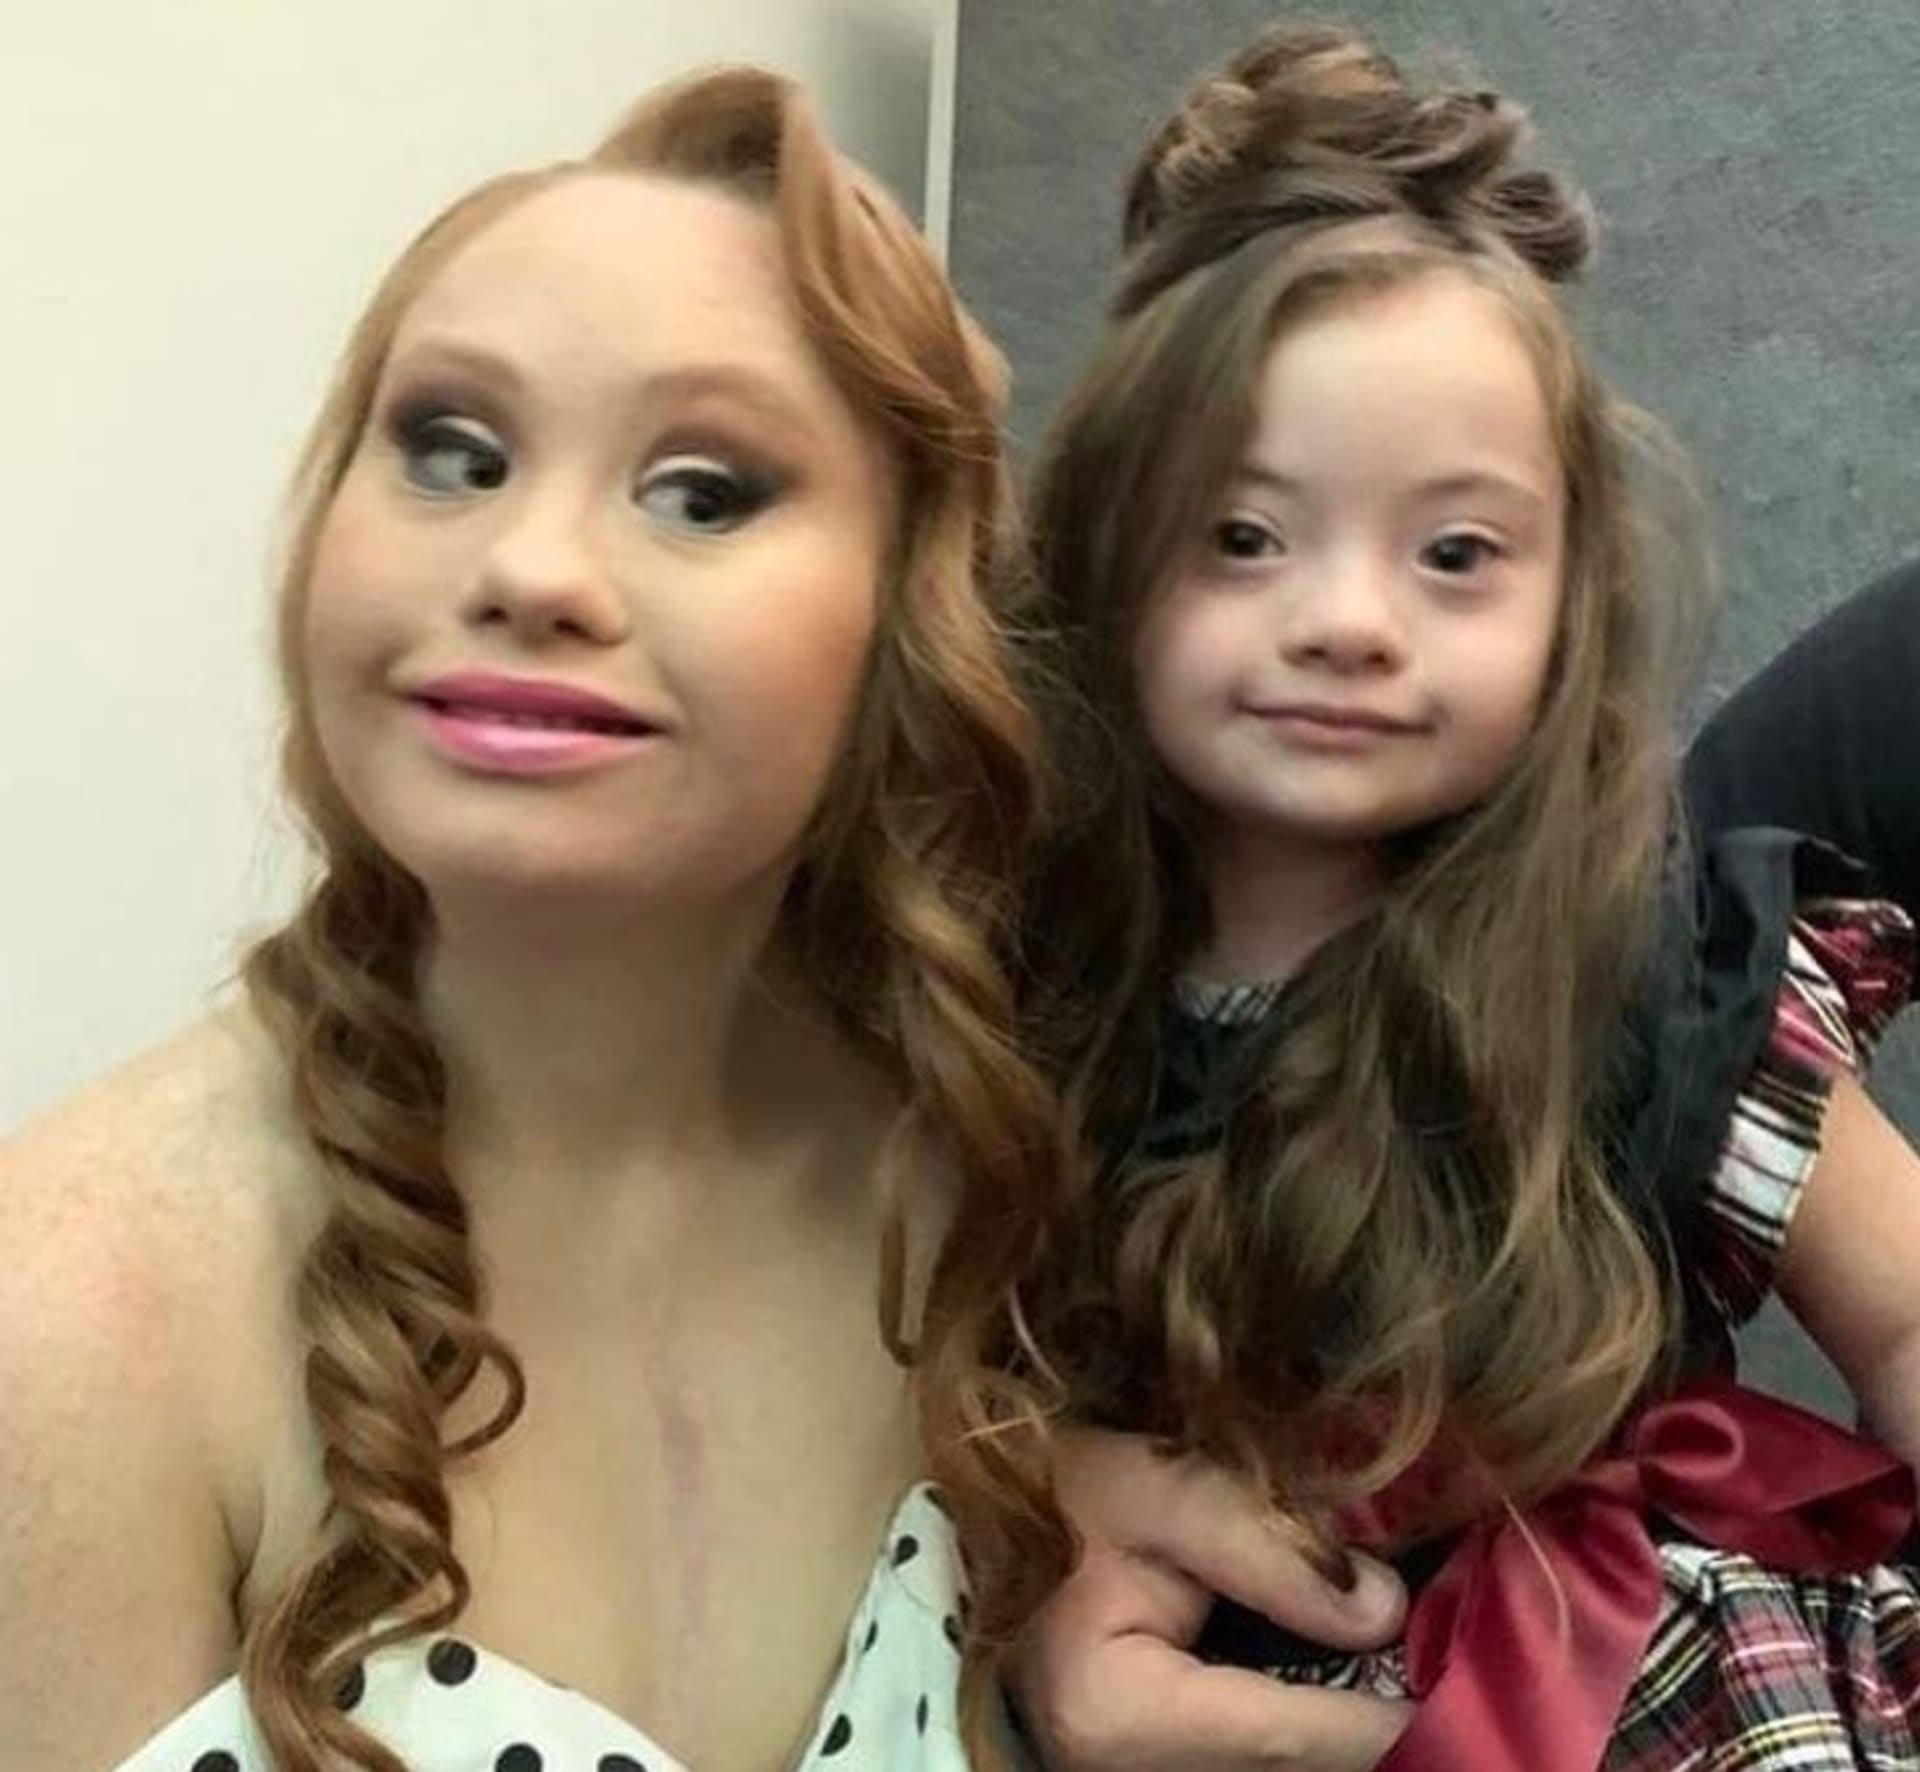 4letá dívka s Downovým syndromem pózuje jako modelka 5